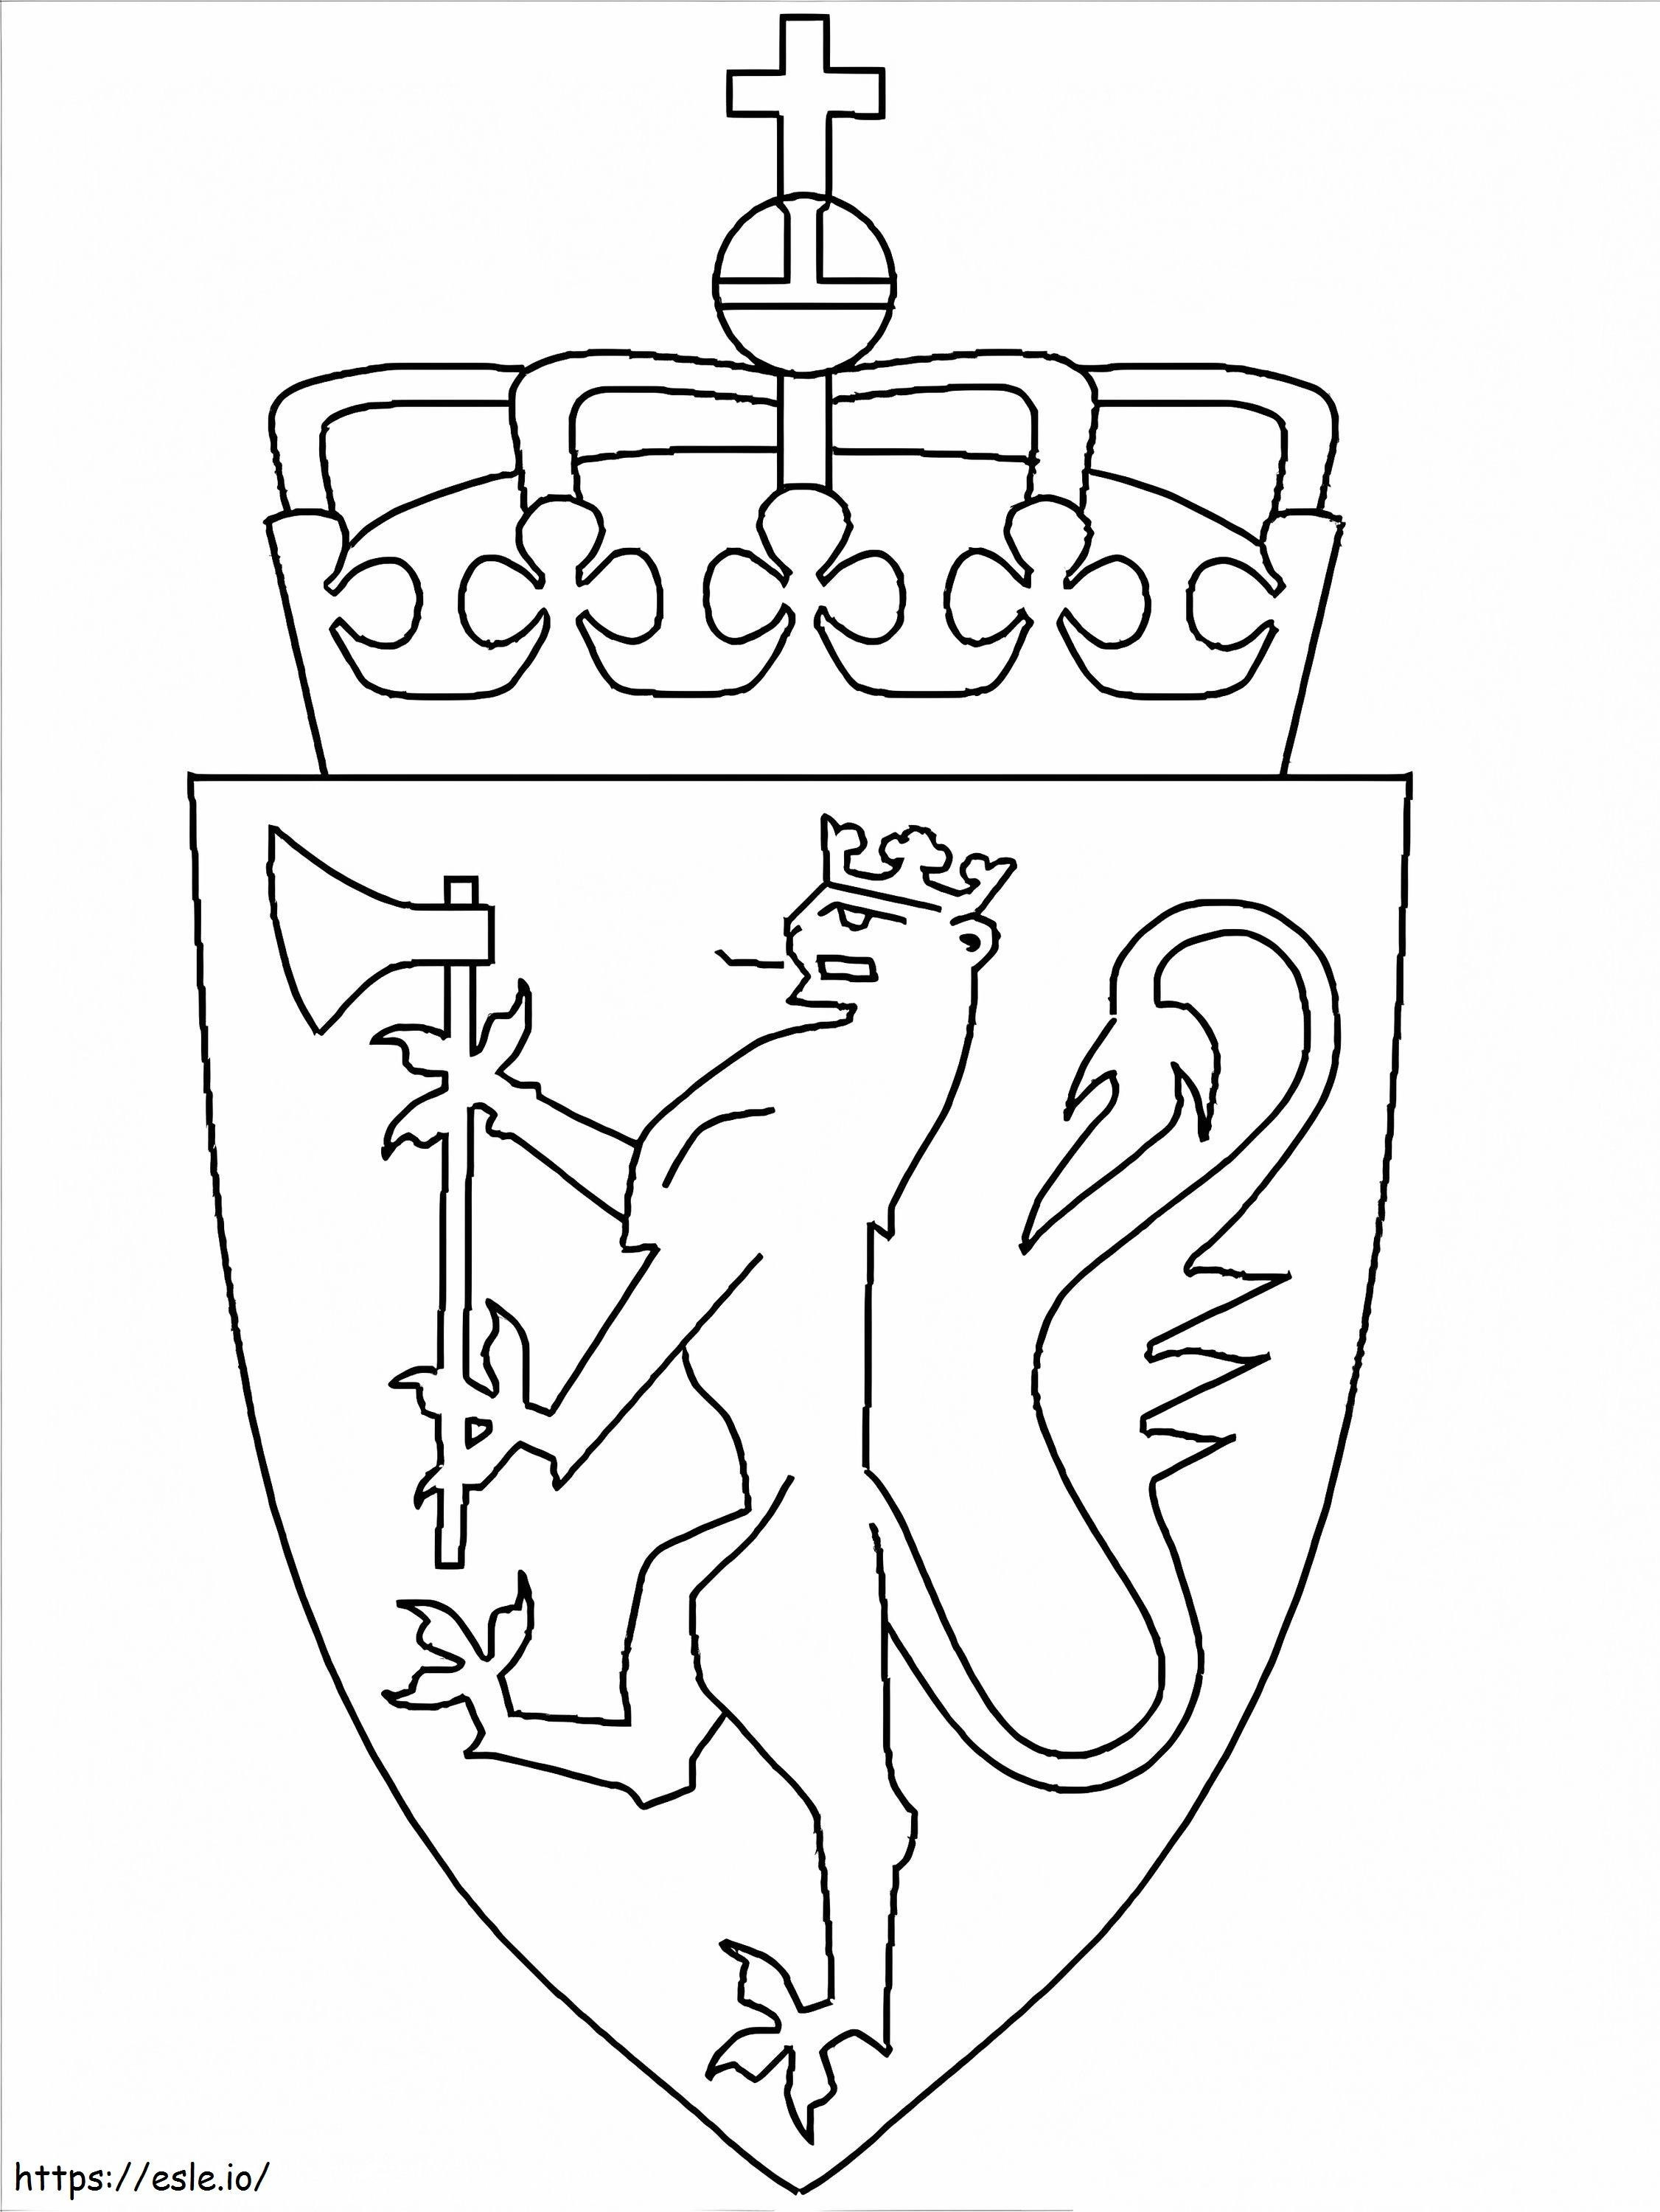 Wappen von Norwegen ausmalbilder